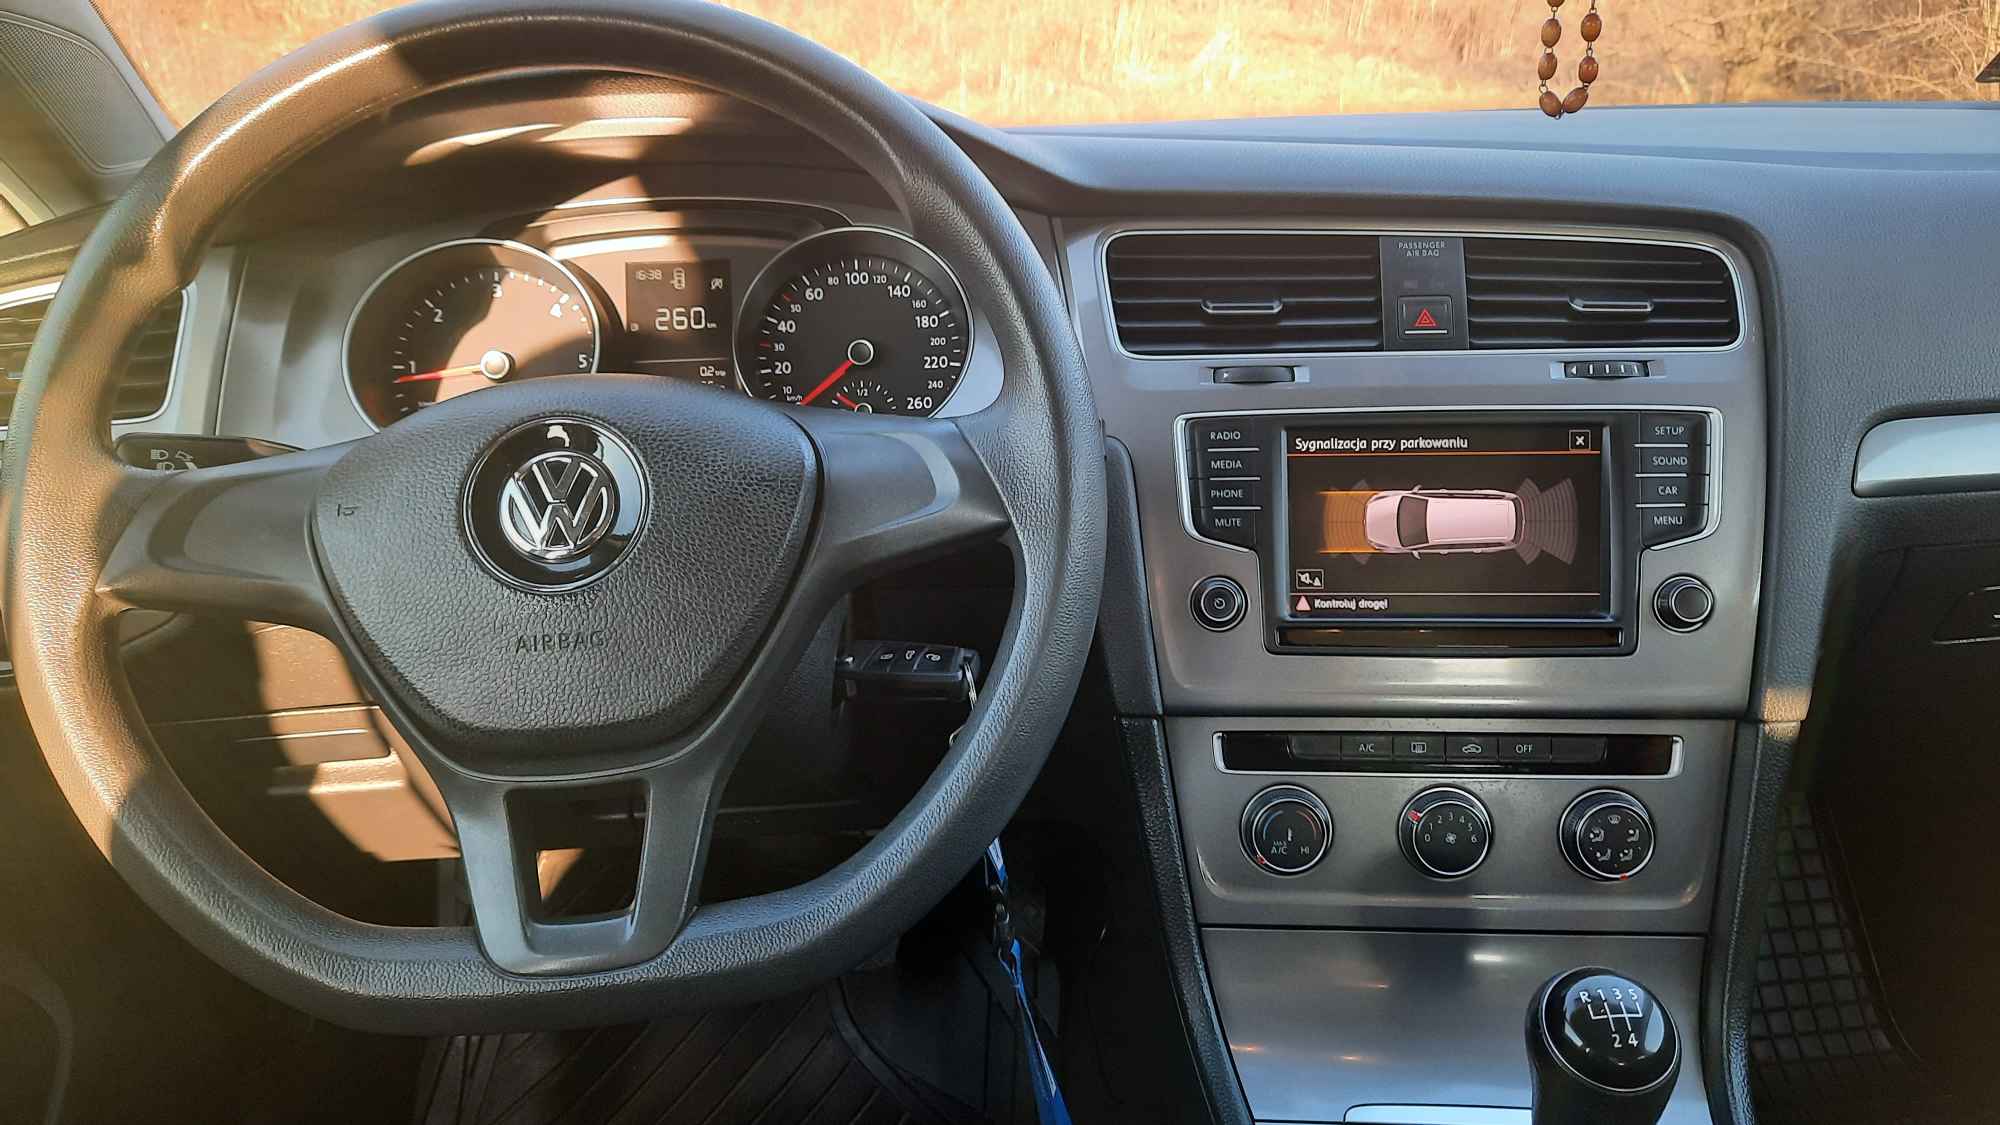 Sprzedam VW GOLF 7  1,6 TDI idealny,oszcędny rodzinny serwis w VW NAVI Kędzierzyn-Koźle - zdjęcie 5